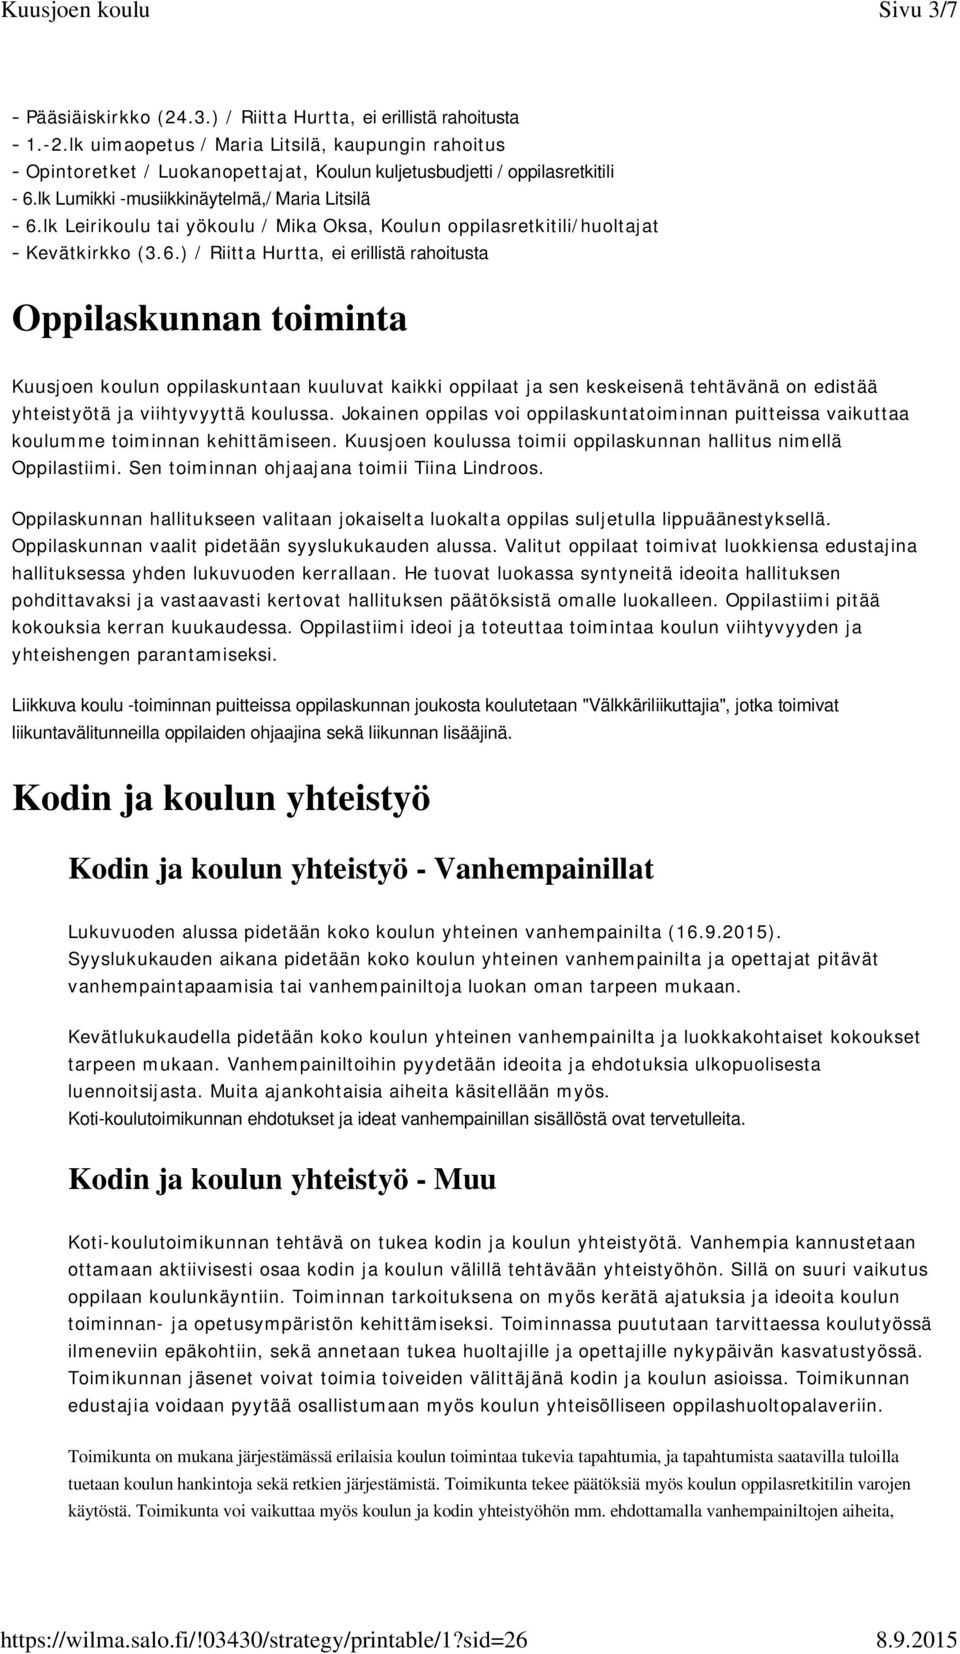 lk Leirikoulu tai yökoulu / Mika Oksa, Koulun oppilasretkitili/huoltajat - Kevätkirkko (3.6.